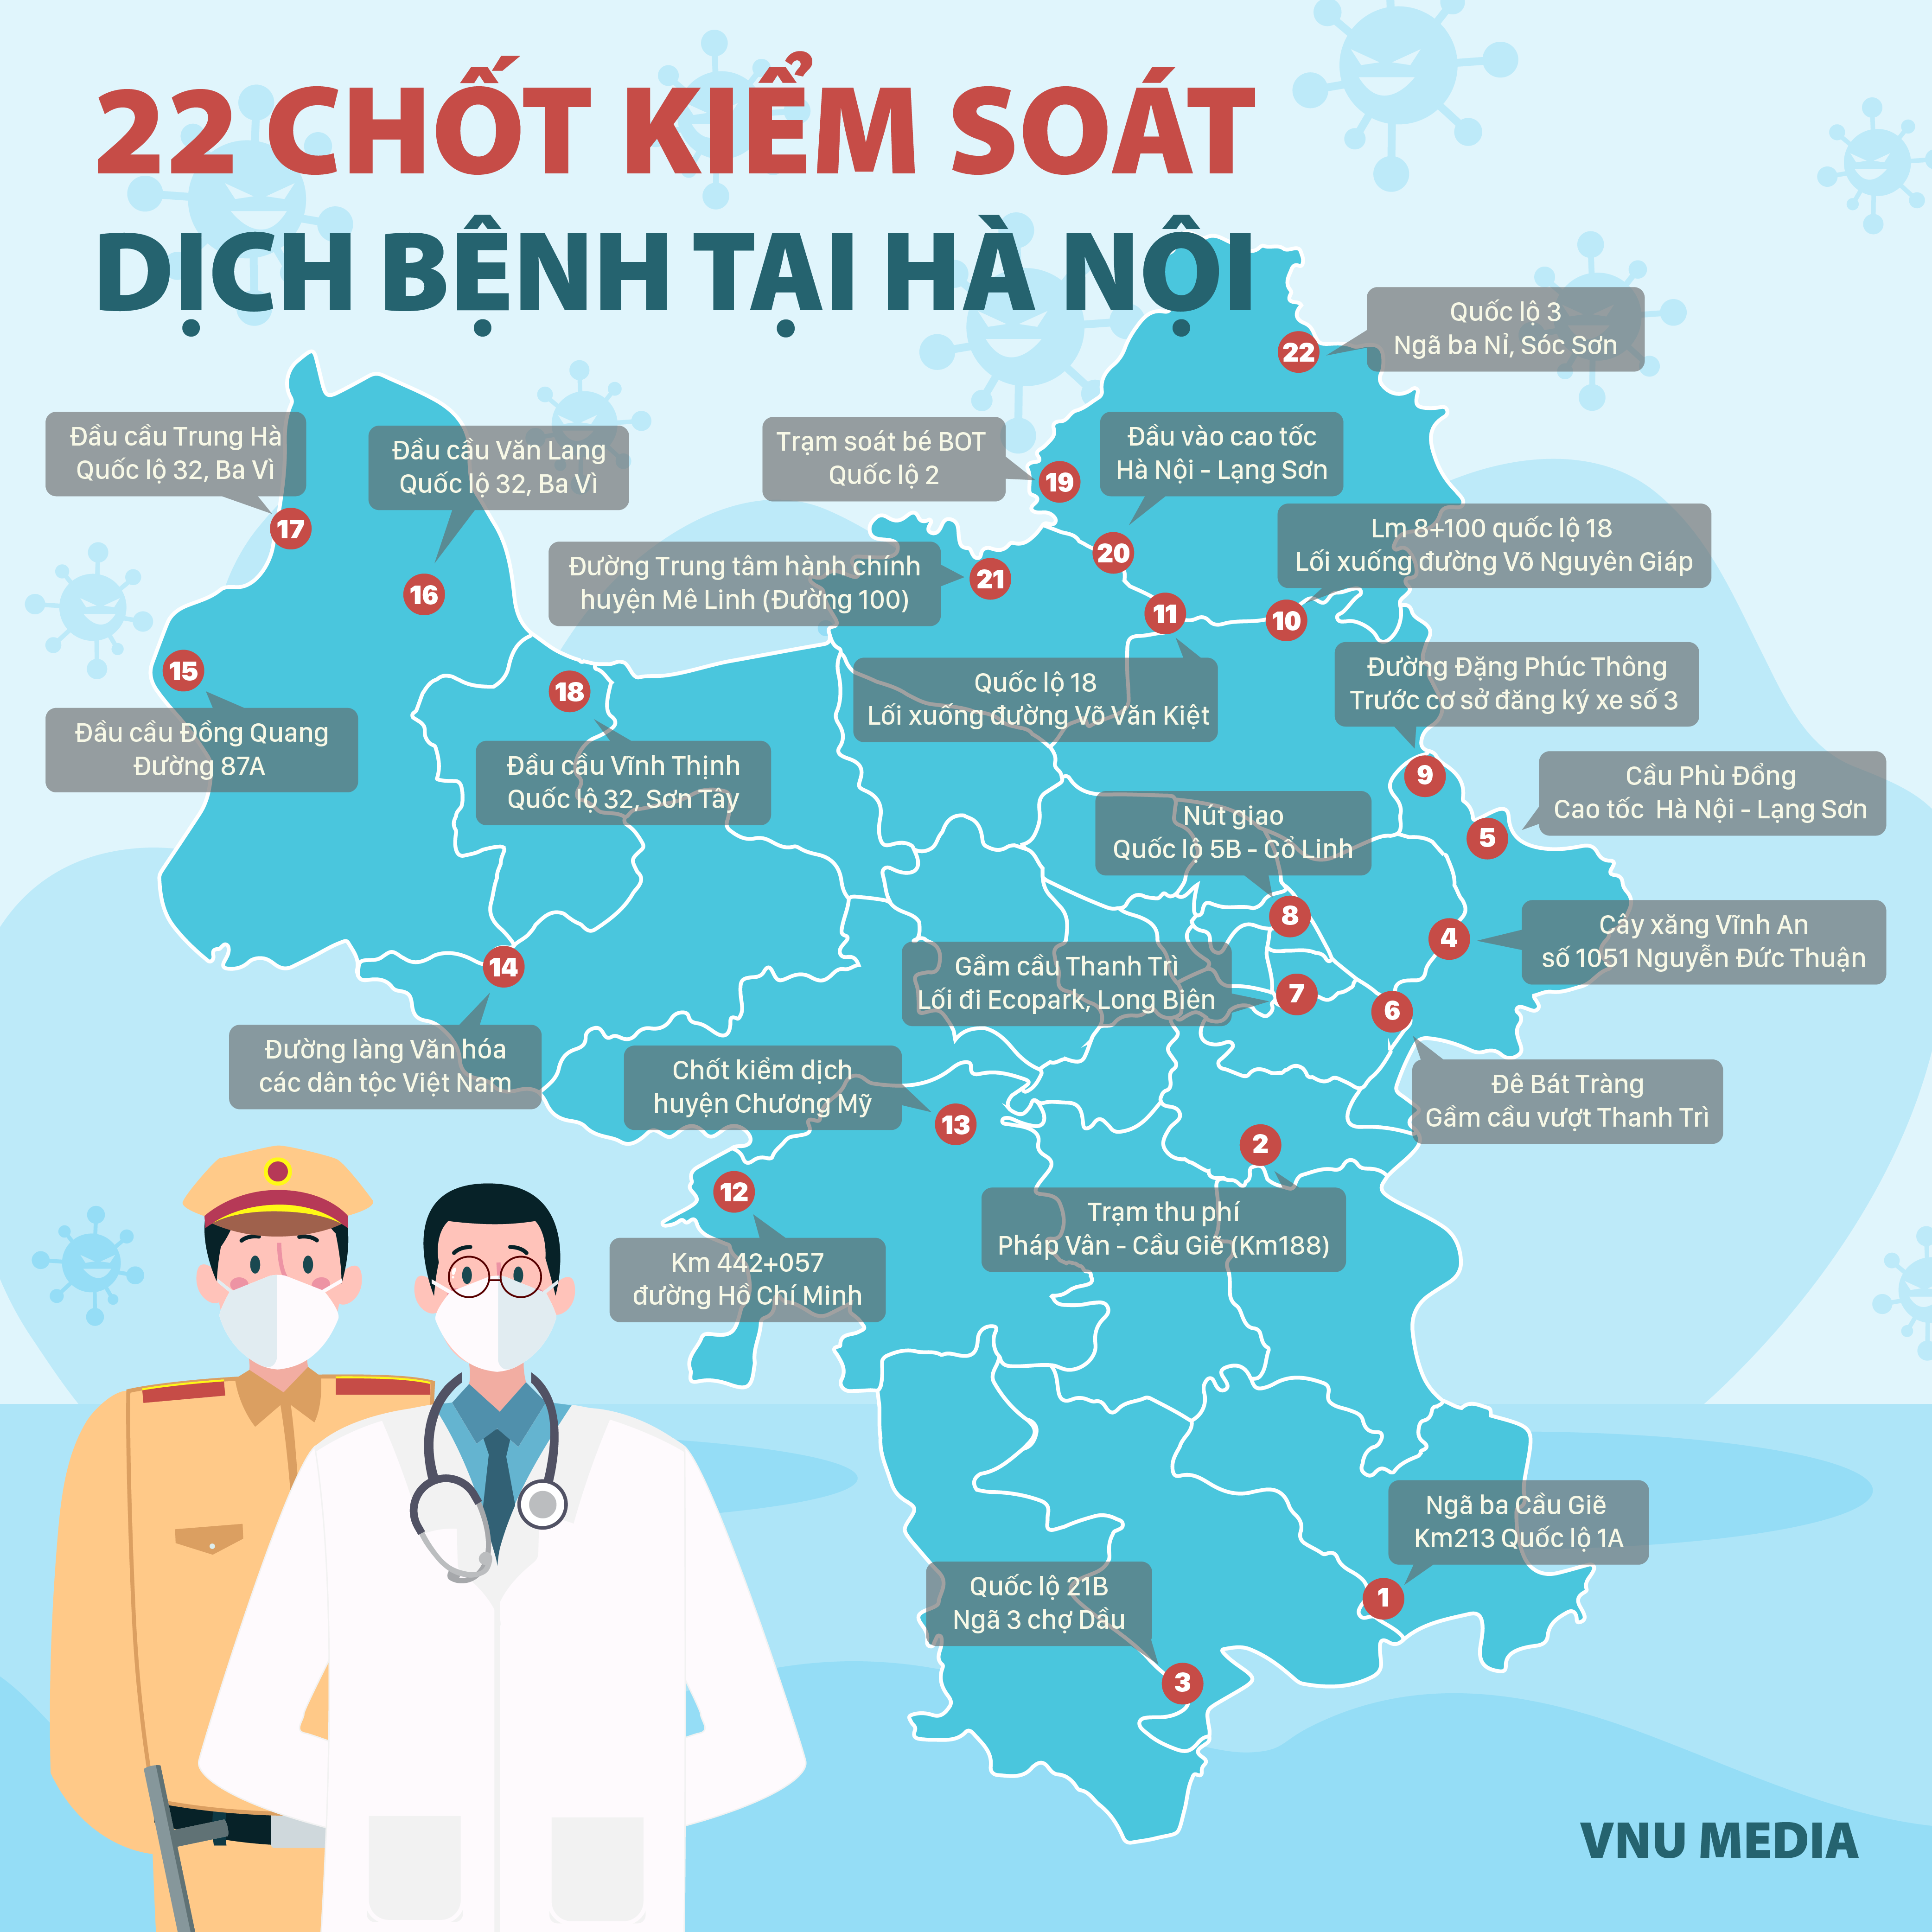 [Infographic] Các chốt kiểm dịch COVID-19 tại cửa ngõ Thủ đô Hà Nội